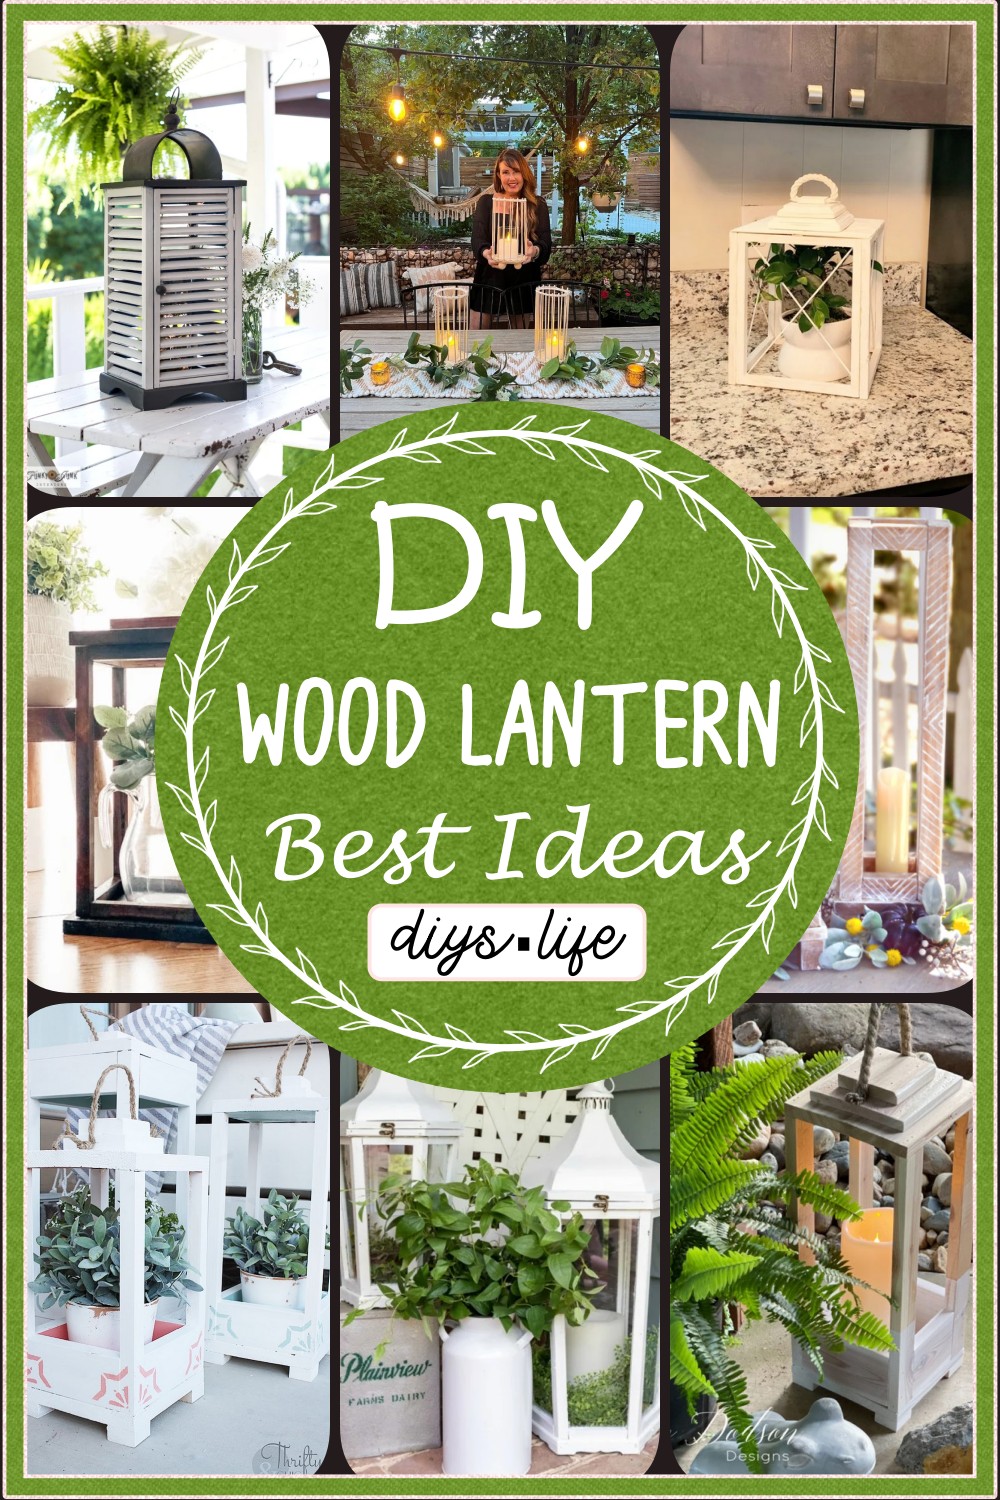 DIY Wood Lantern Ideas